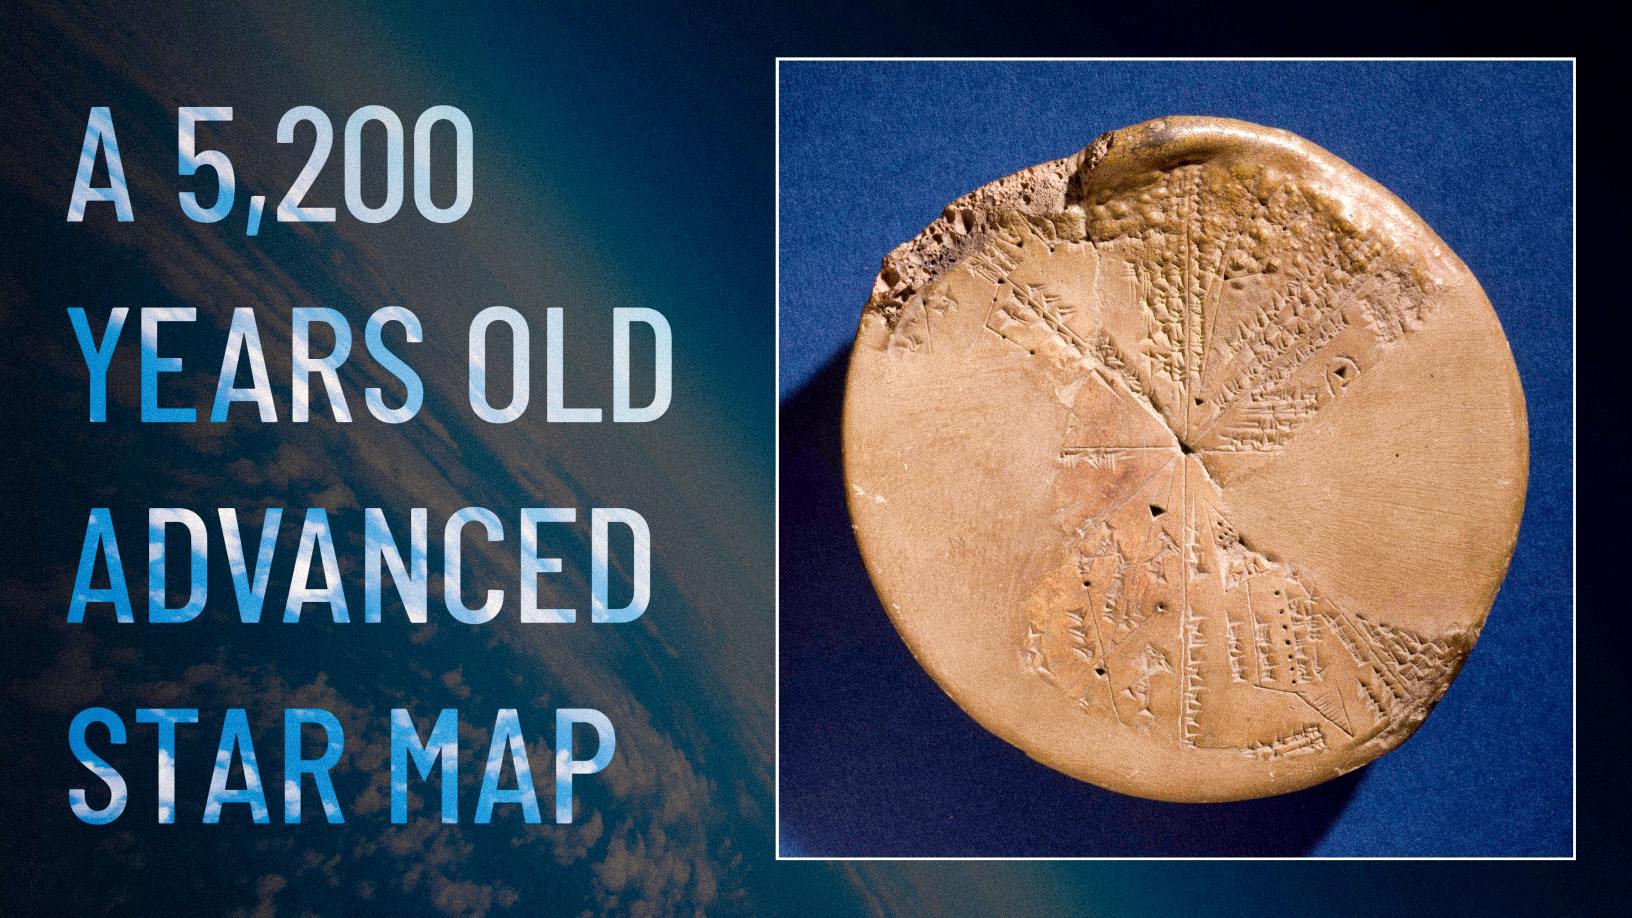 A sumér síkgömb: Egy ősi csillagtérkép, amely a mai napig megmagyarázhatatlan 1